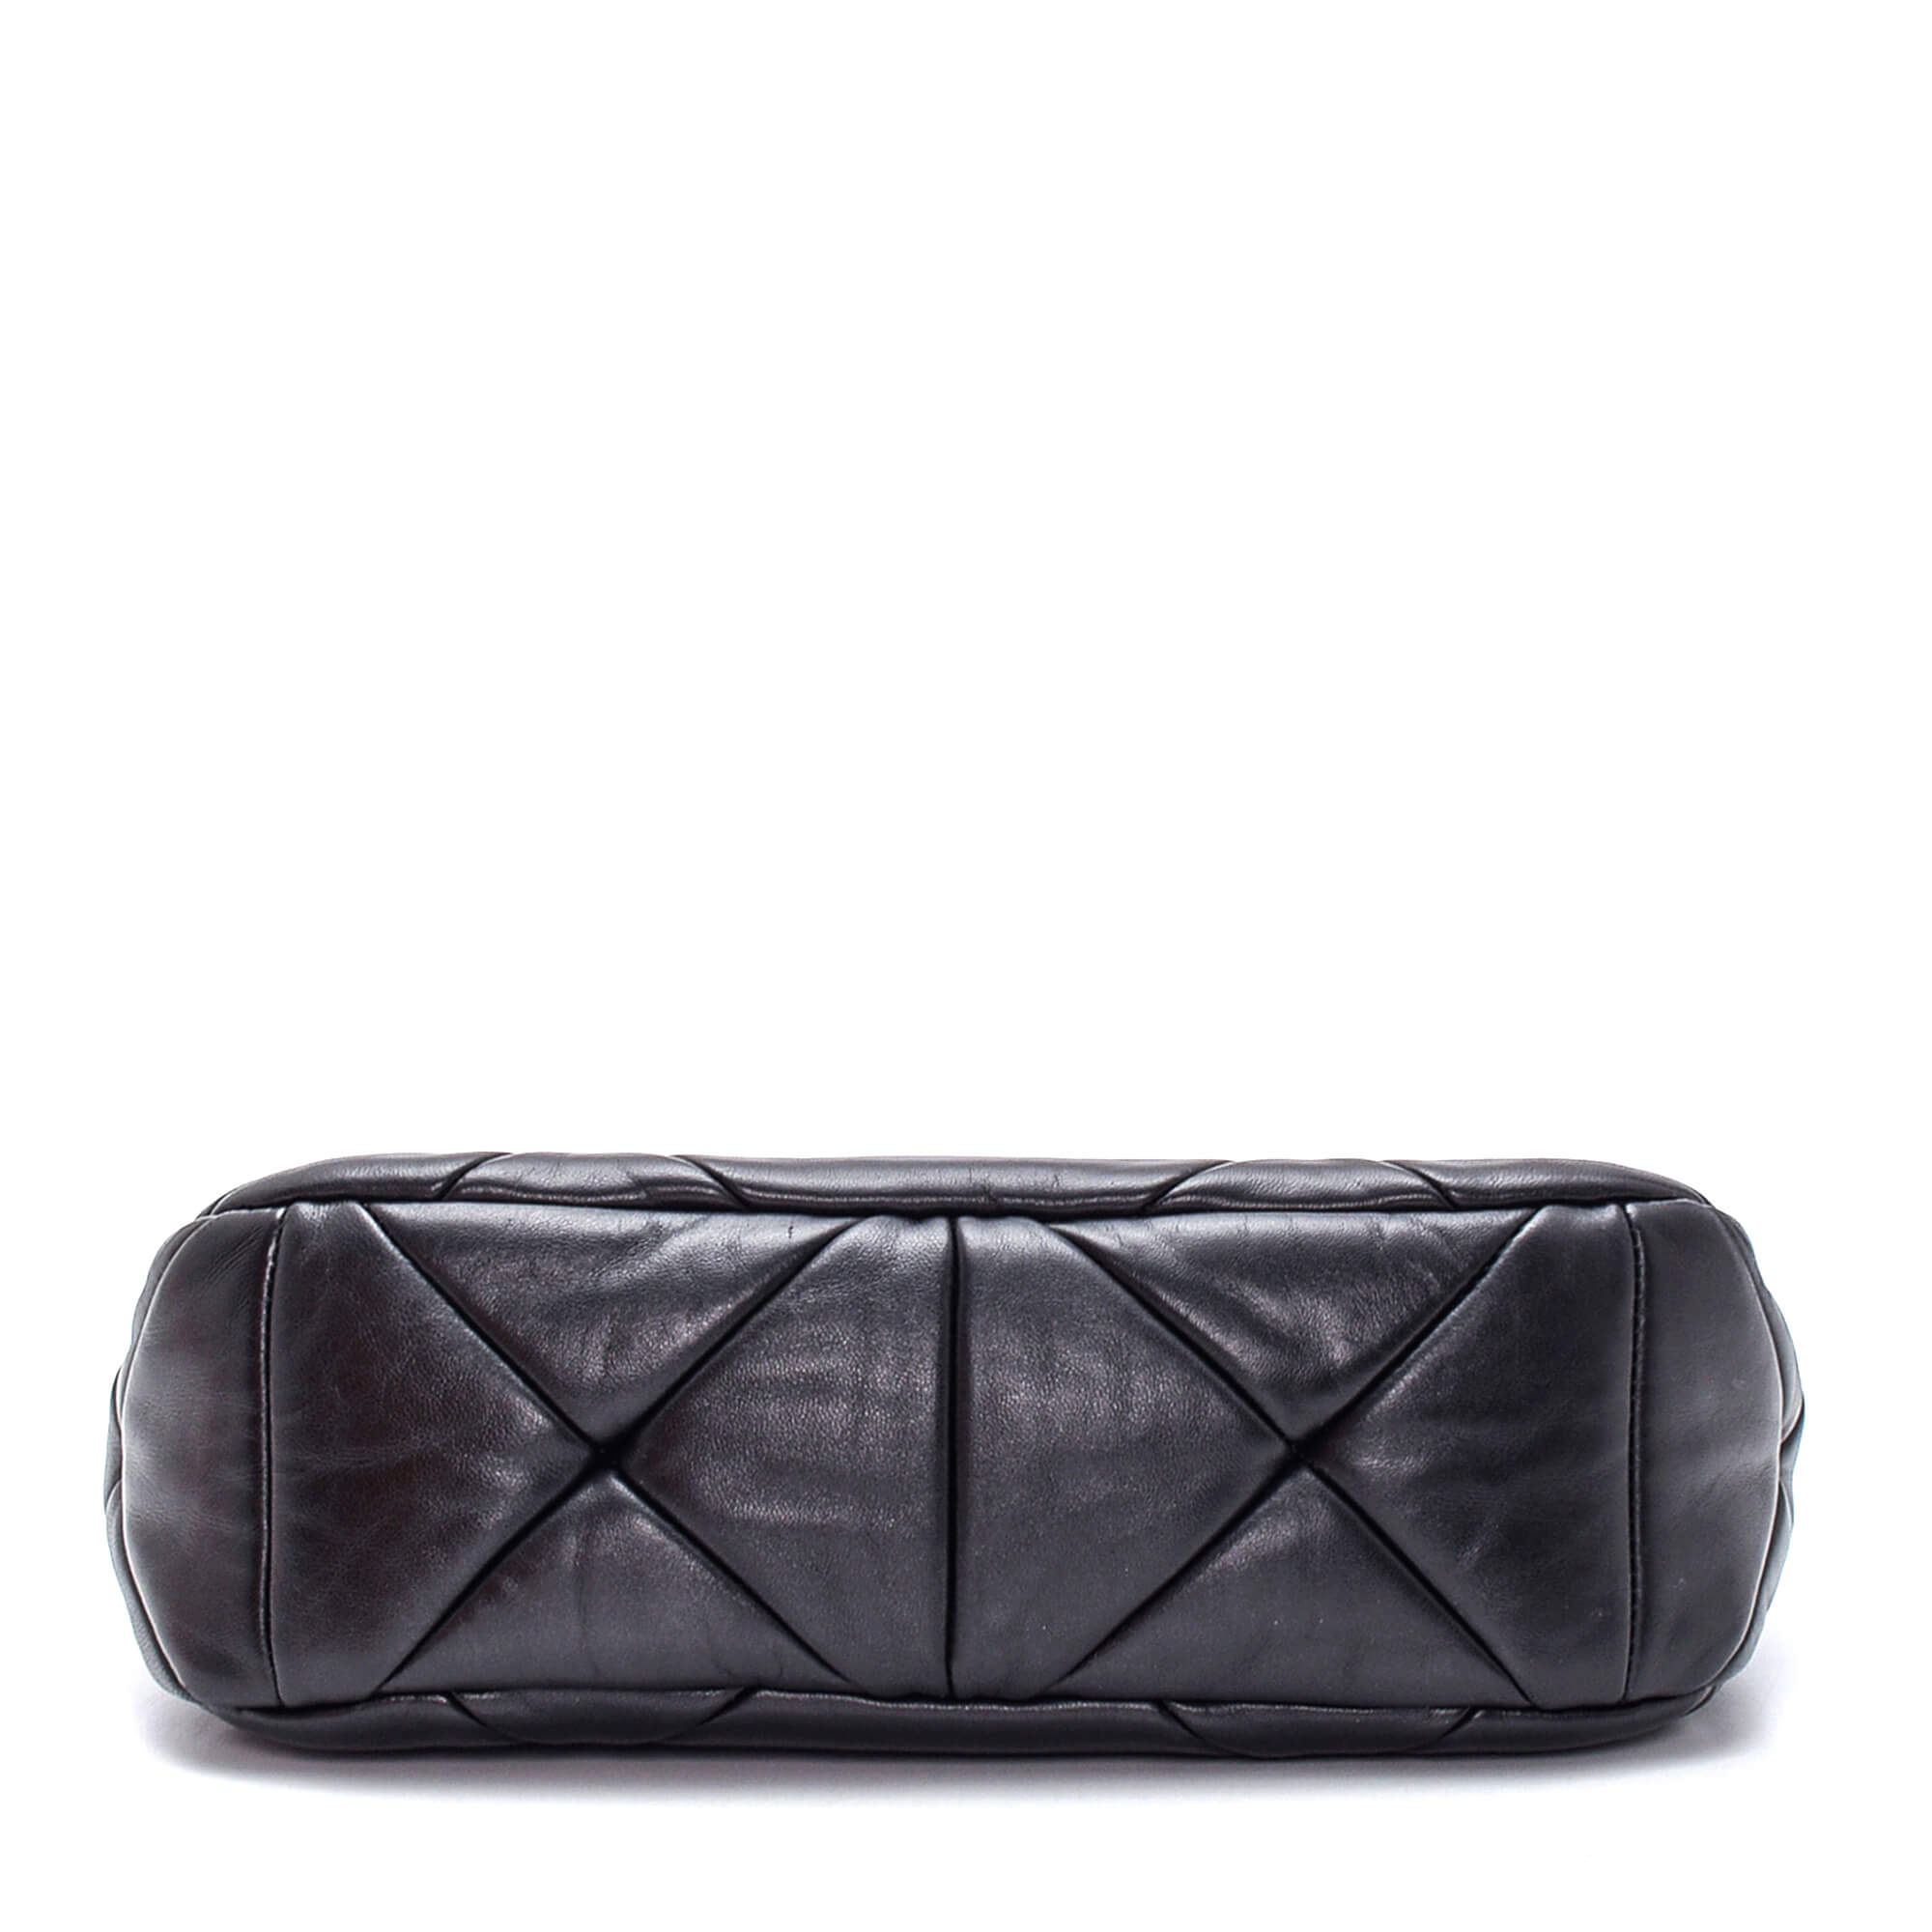 Prada - Black System Nappa Leather Patchwork Shoulder Bag 